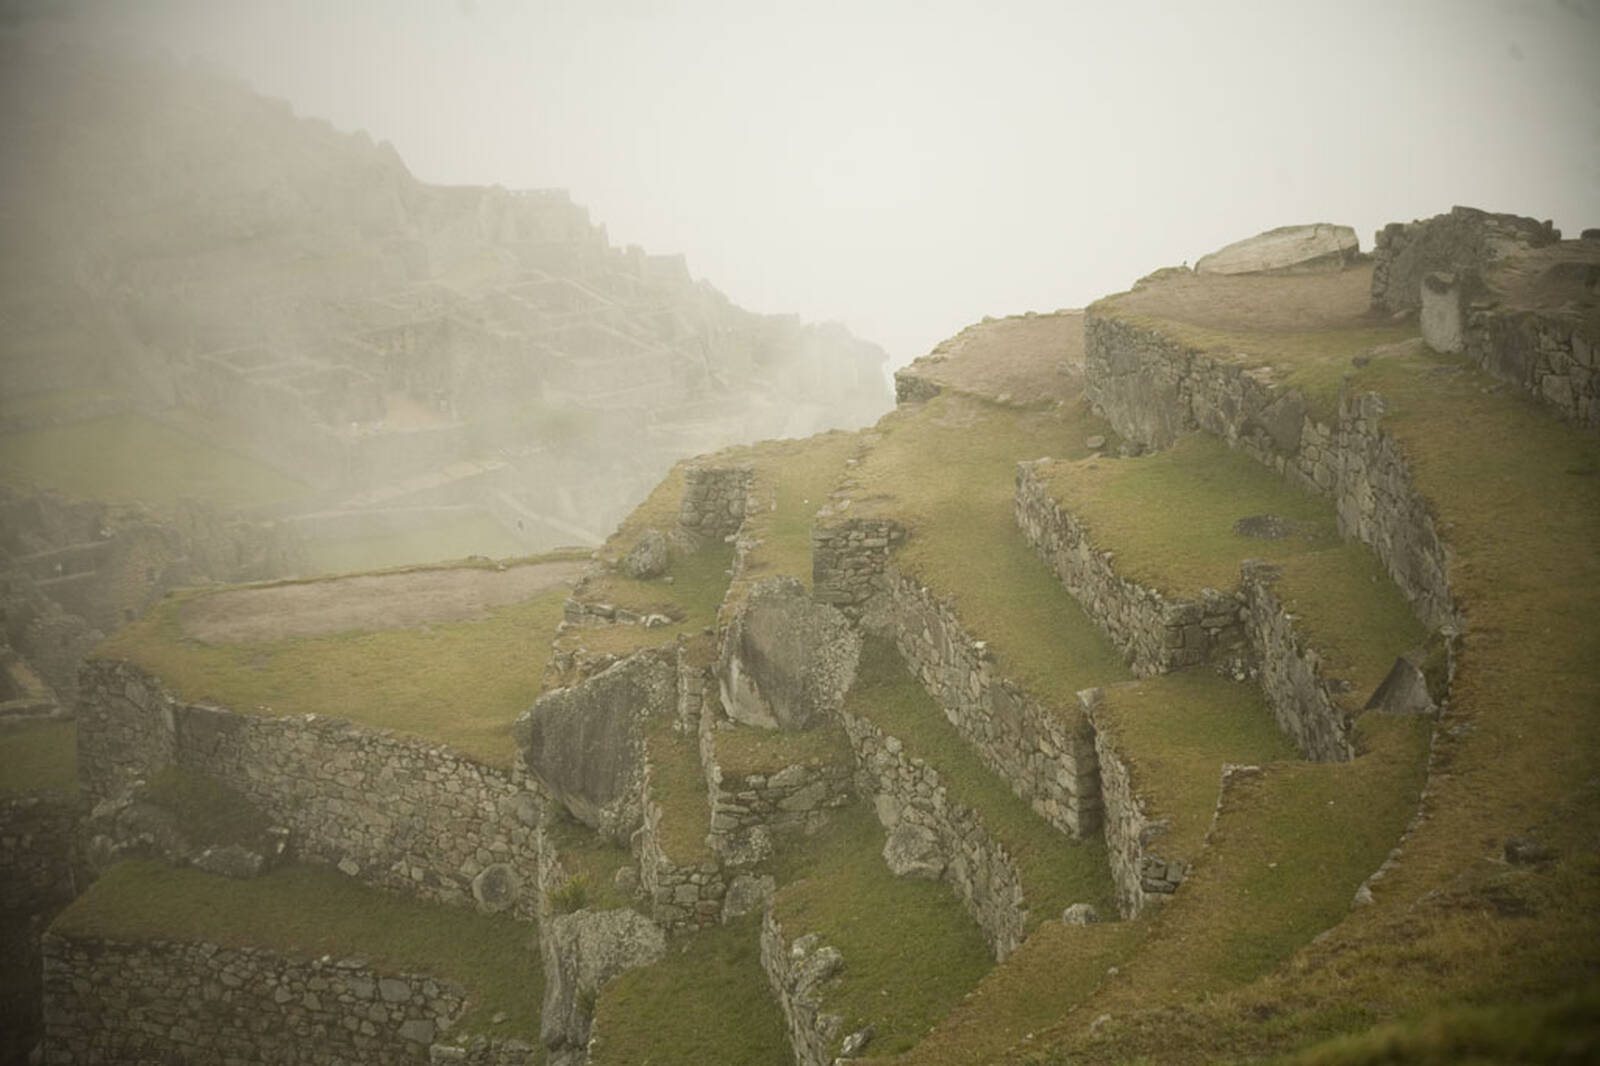 Image of Machu Picchu, Peru by Darlene Hildebrandt